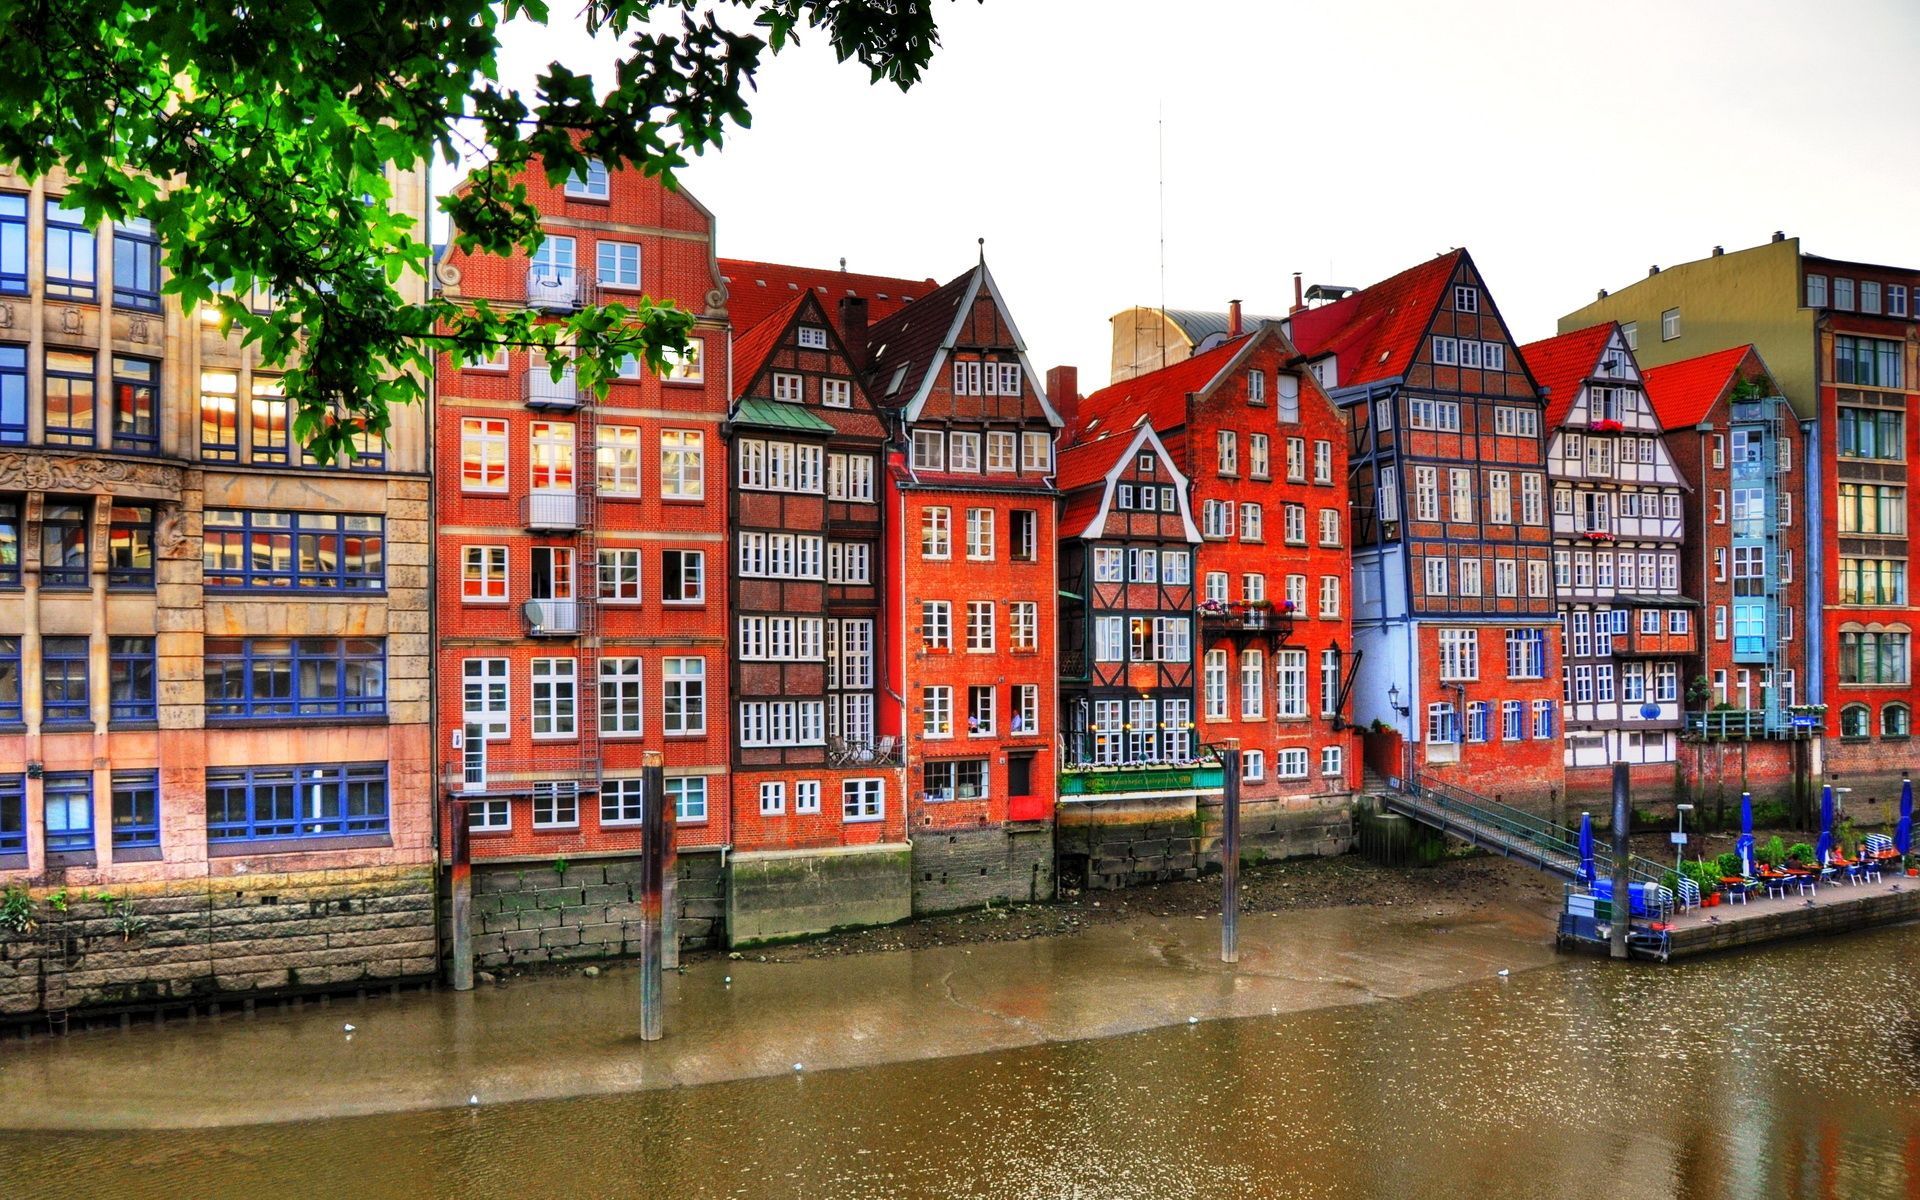 دیدنی ترین شهر اروپایی با ساختمان های قرمز رنگ فول HD 